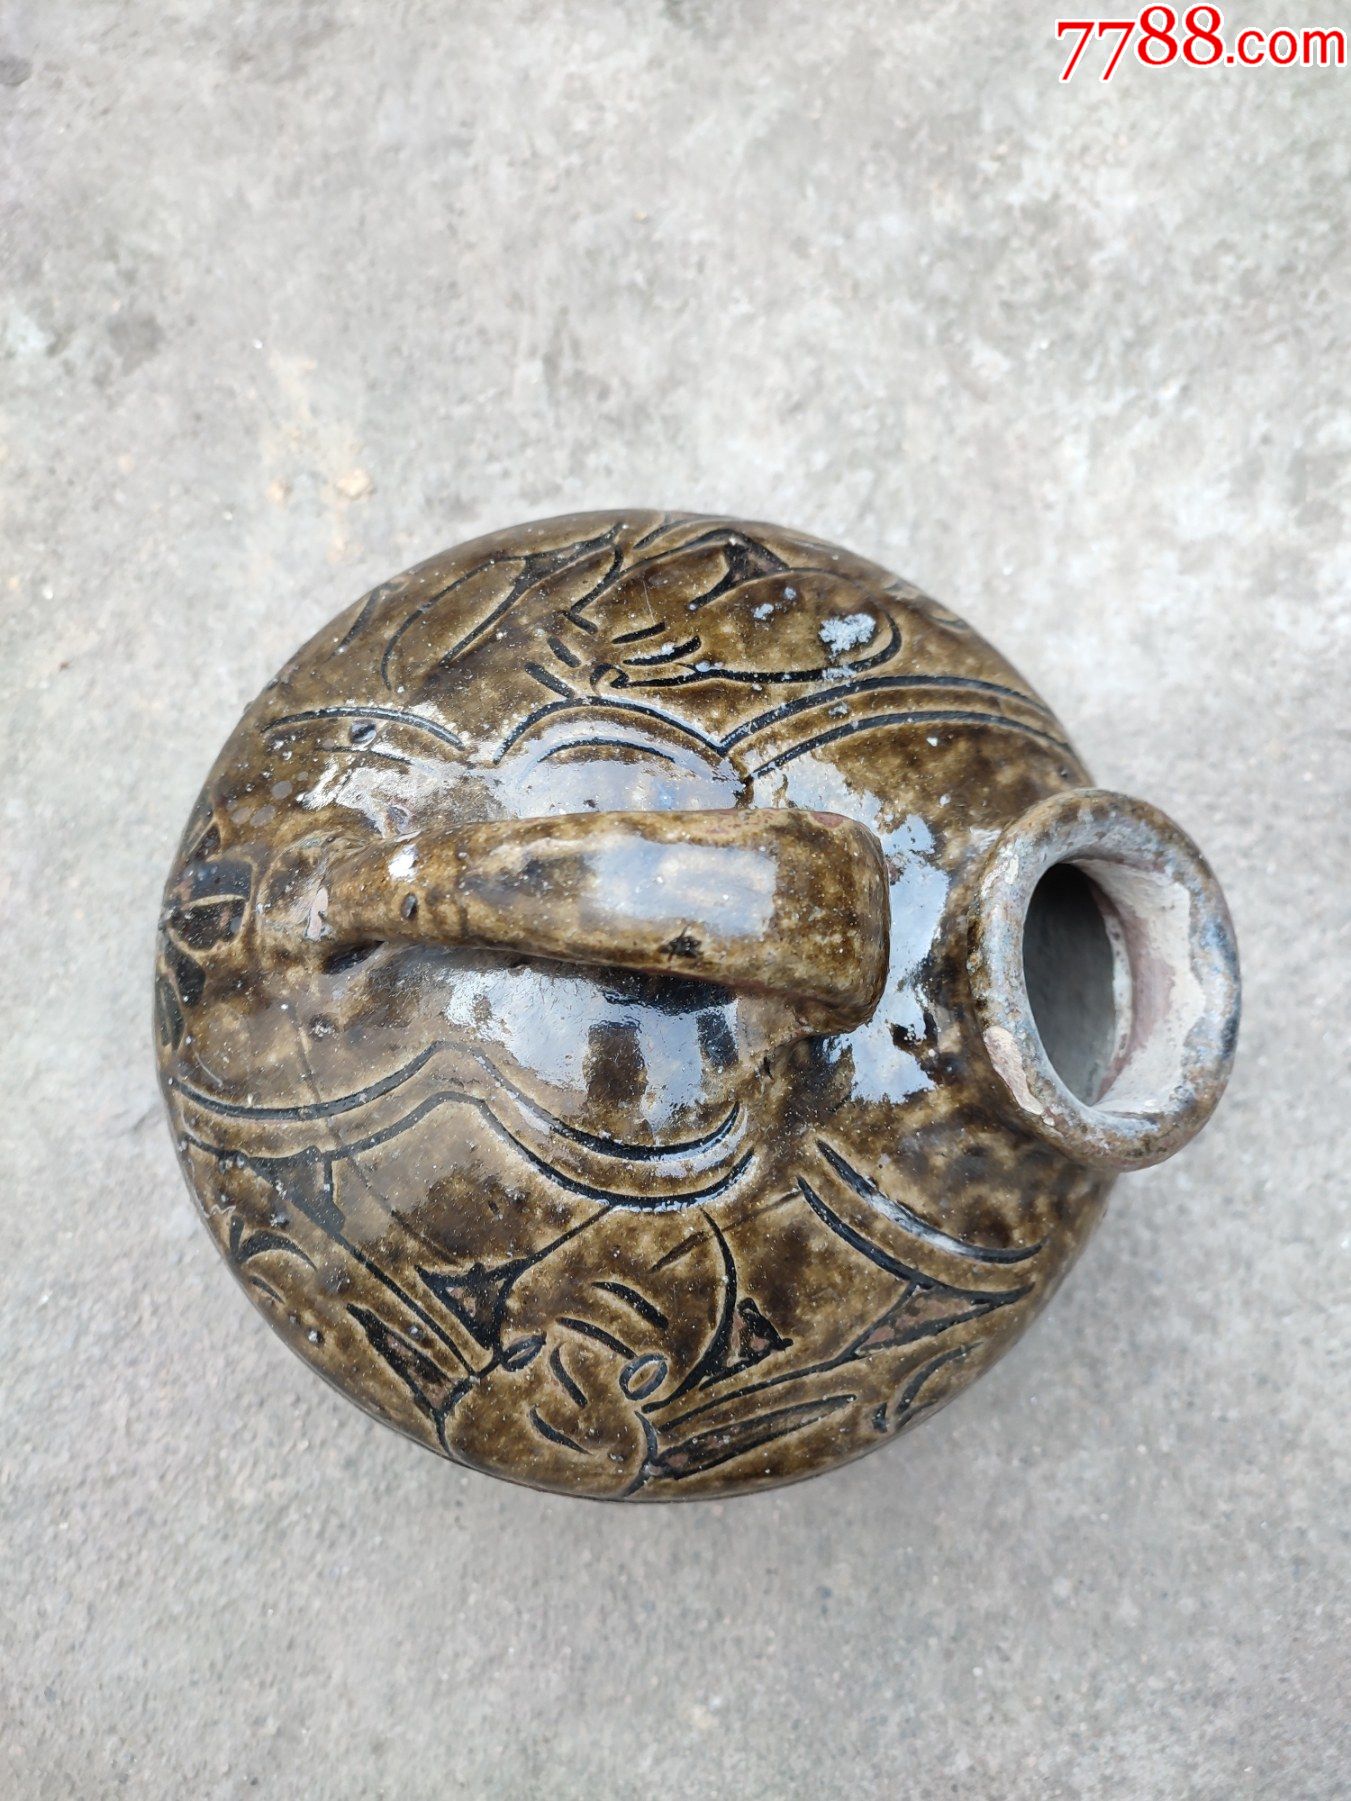 全品清代马口窑陶器夜壶,高20厘米,直径20厘米,如图所示